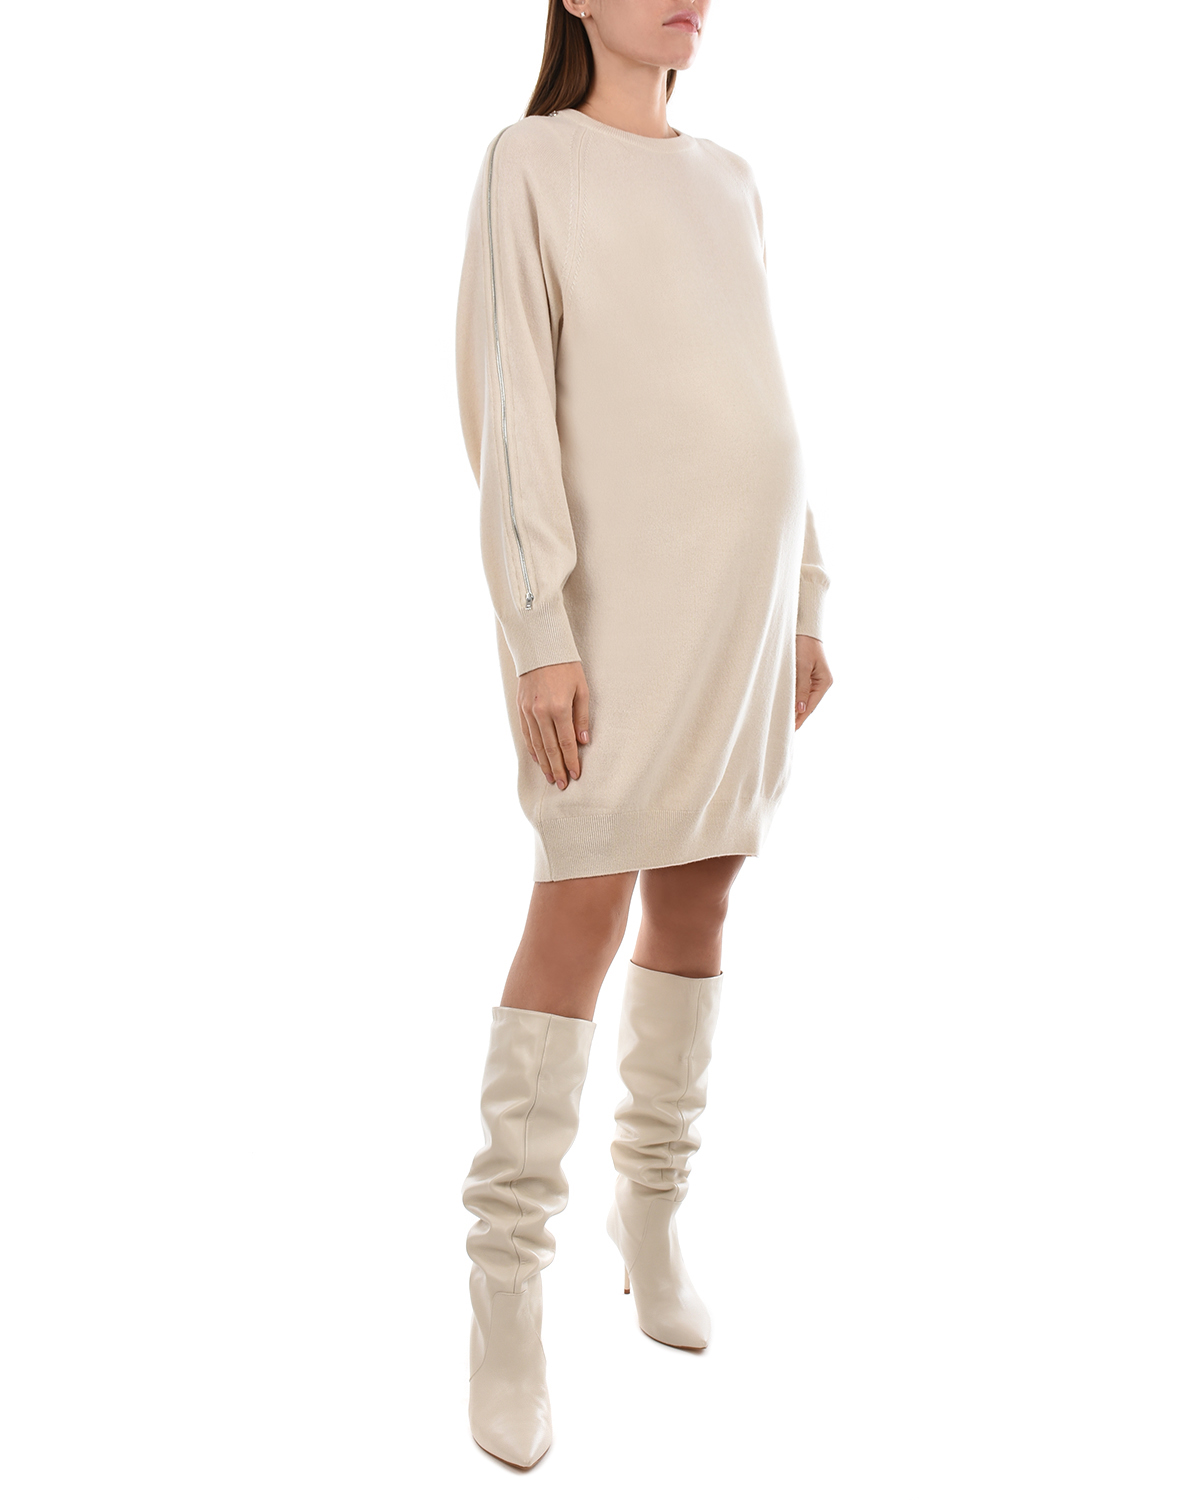 Бежевое платье из шерсти и кашемира MRZ, размер 40, цвет бежевый - фото 5